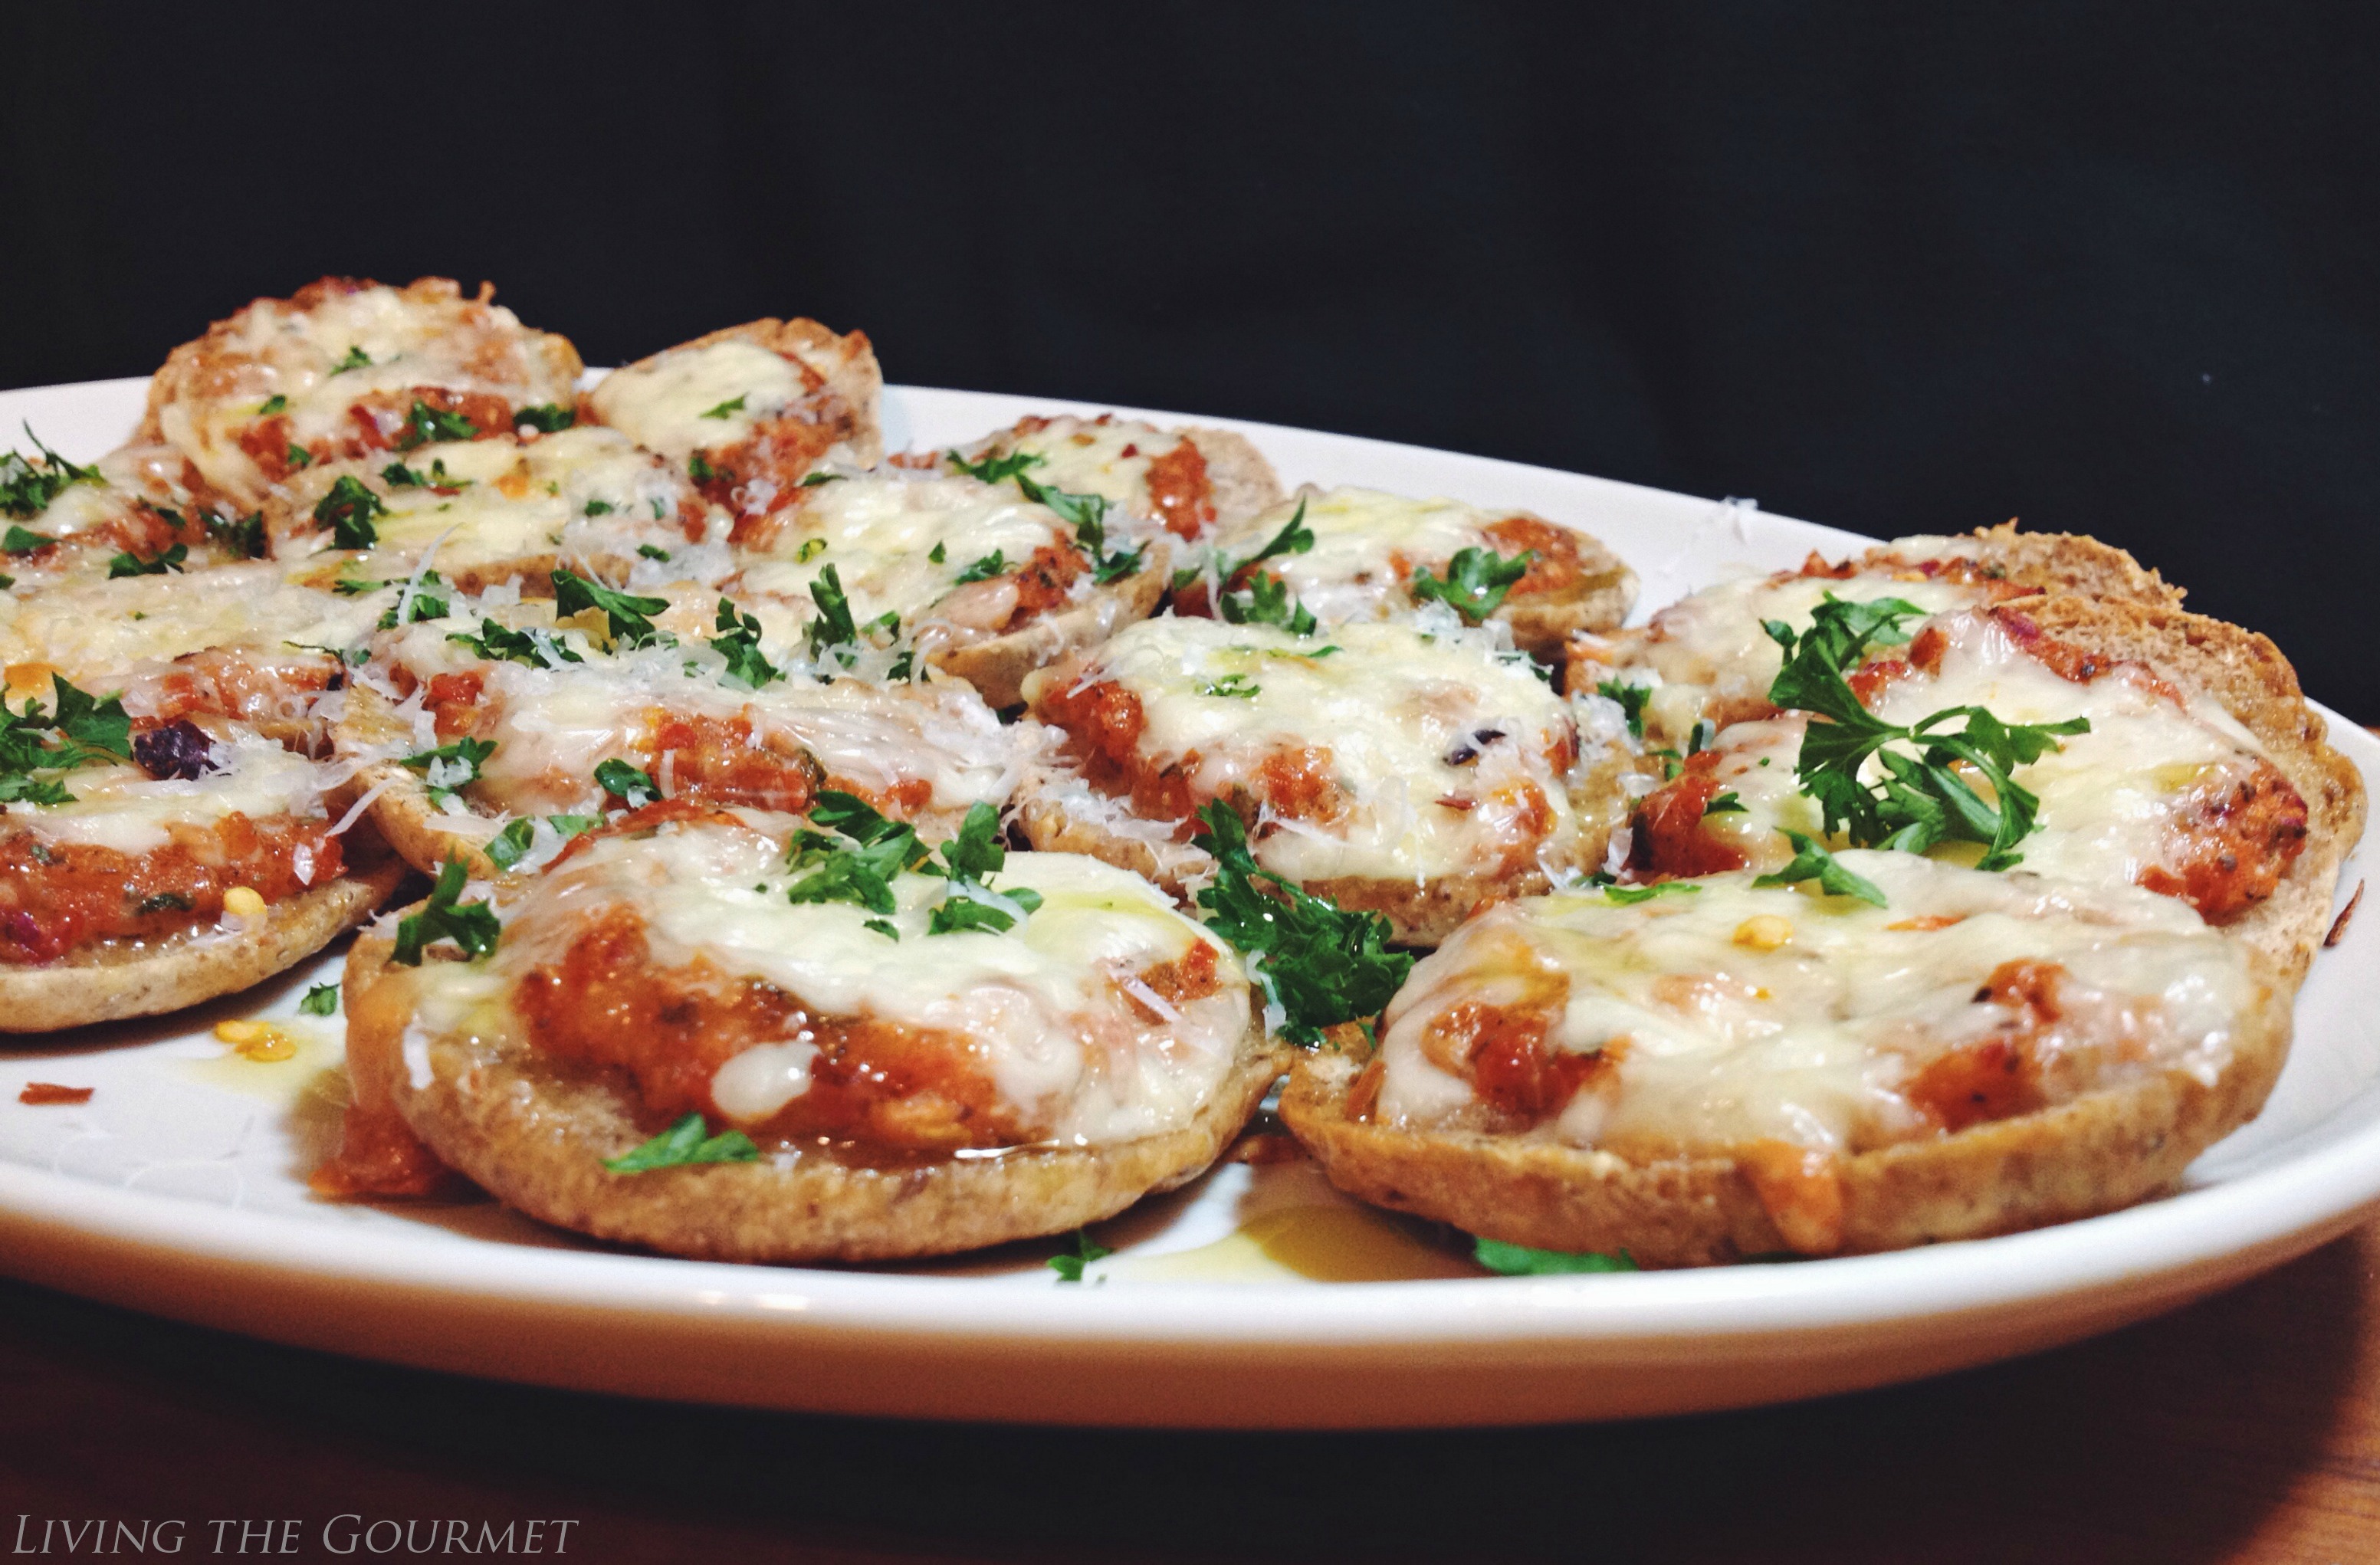 Living the Gourmet: Fresh Tomato Pizza Sliders